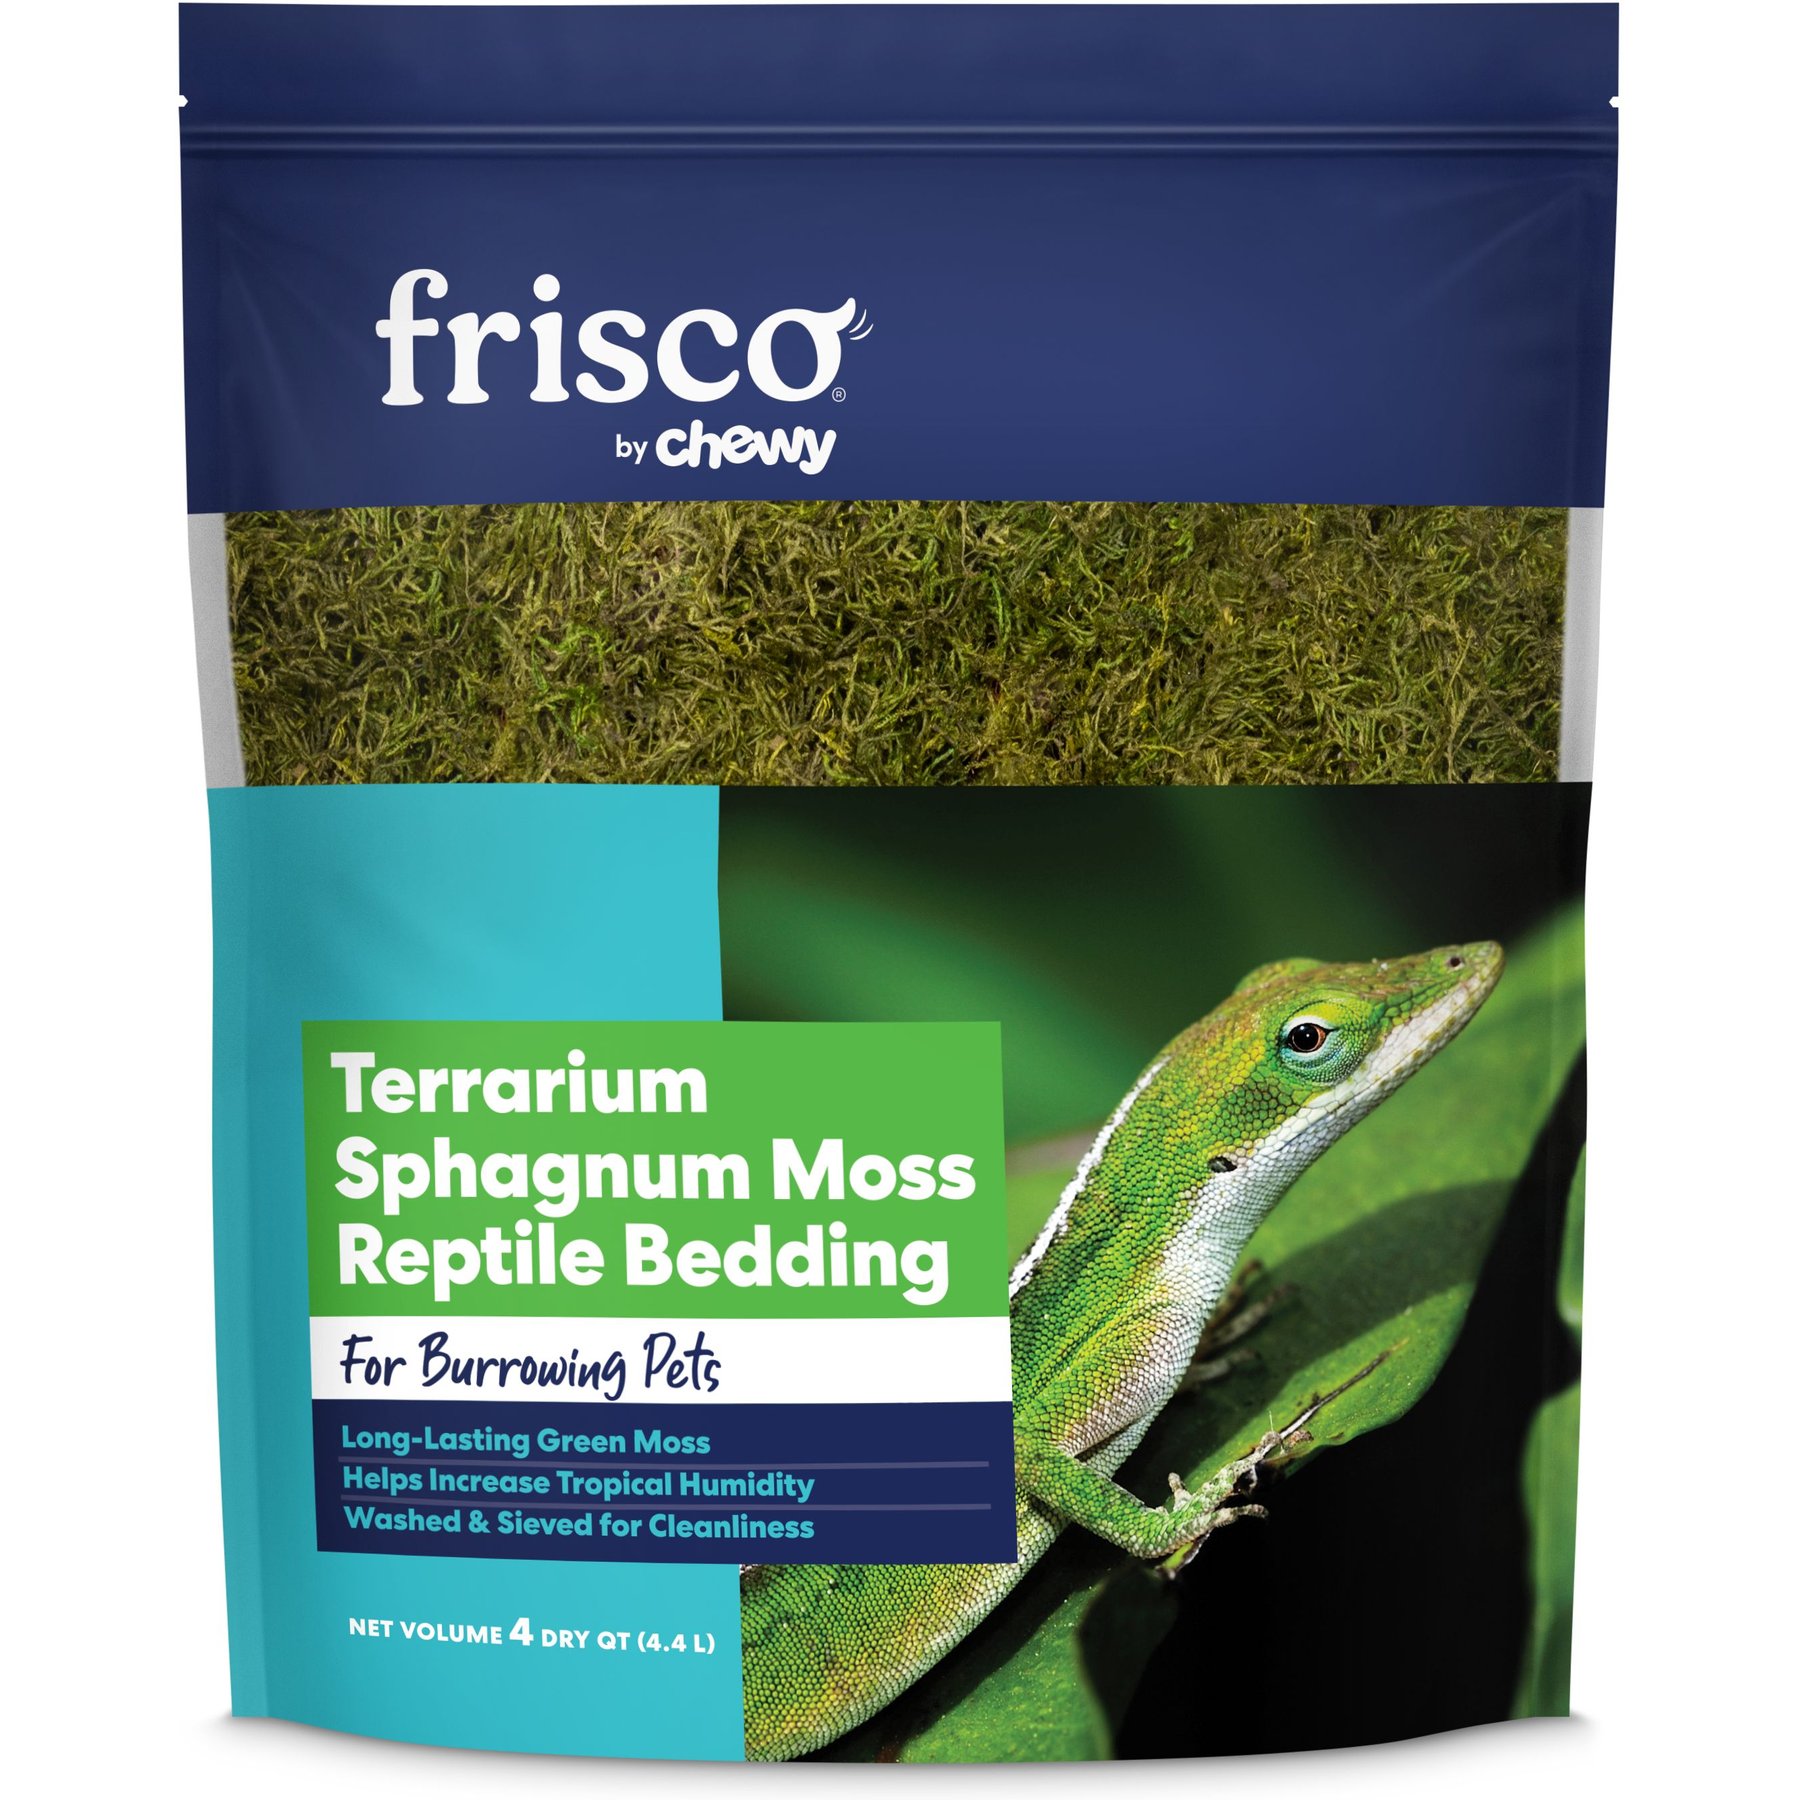 Fluker's Green Sphagnum Moss only $8.78